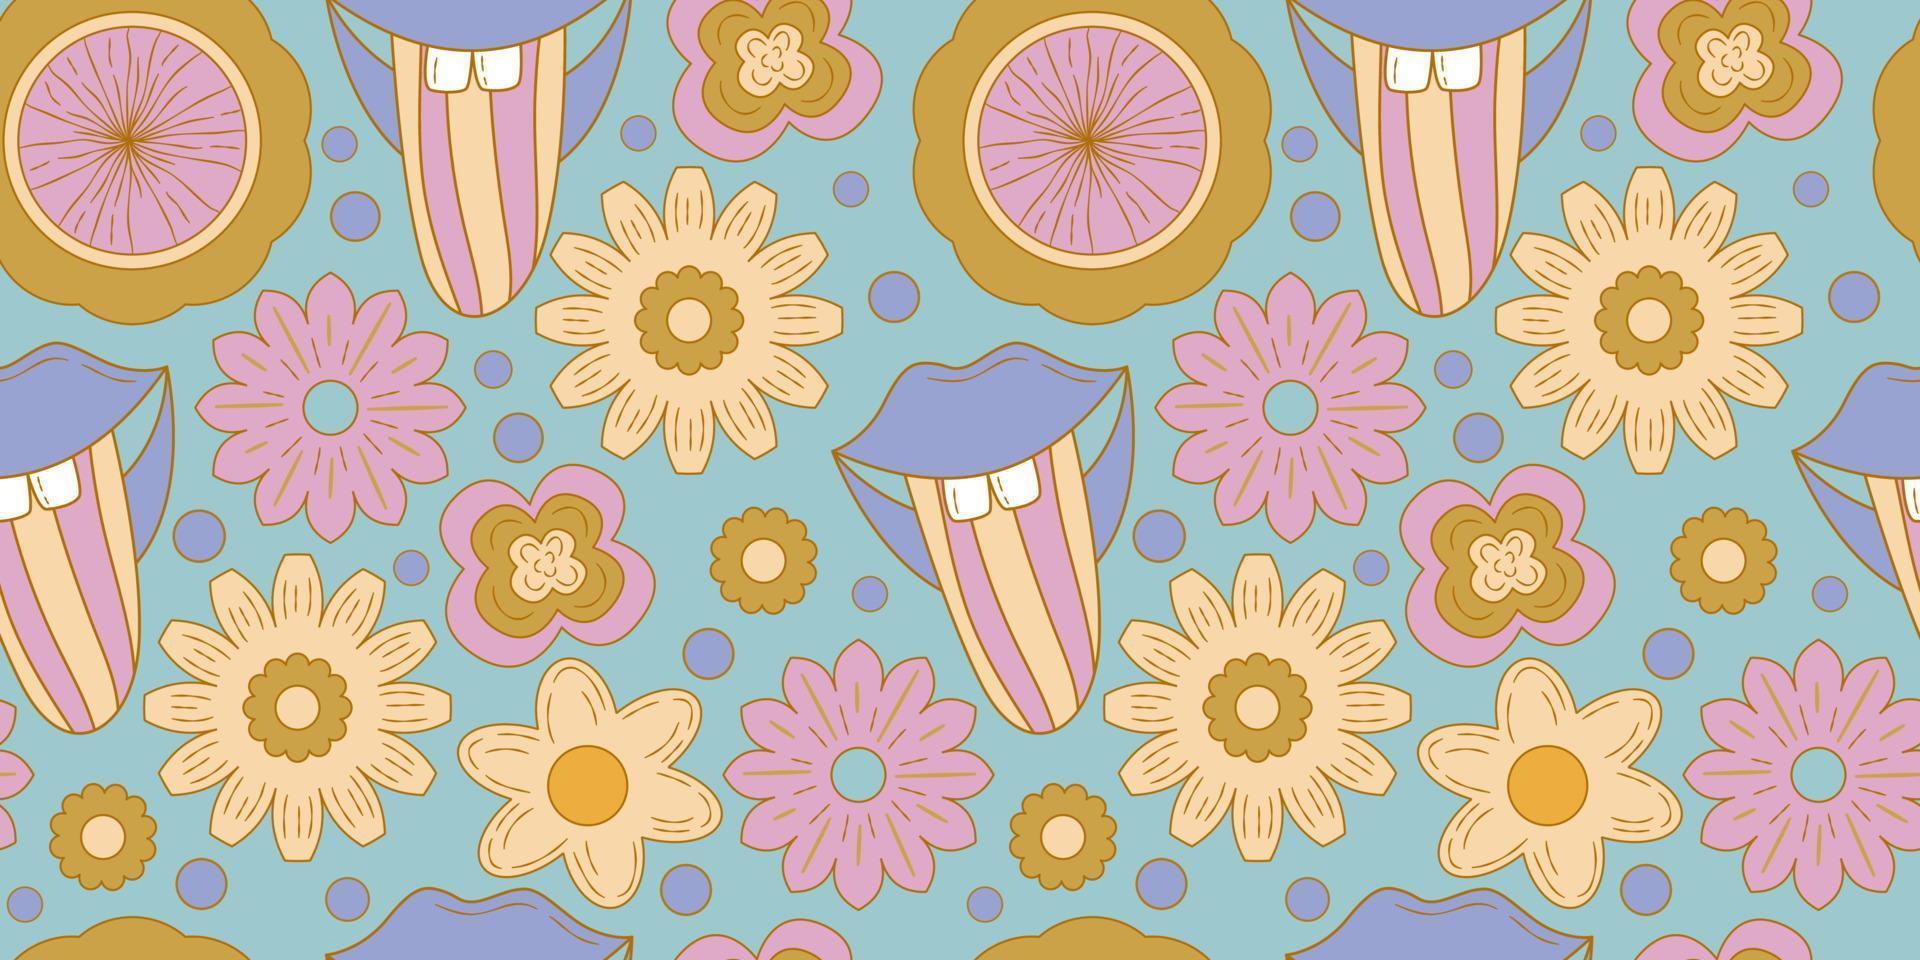 Groovy y2k retro de patrones sin fisuras con flores, labios. ilustración vectorial retro. fondo de flores maravillosas. Ilustración de patrones sin fisuras hippie colorido. vector